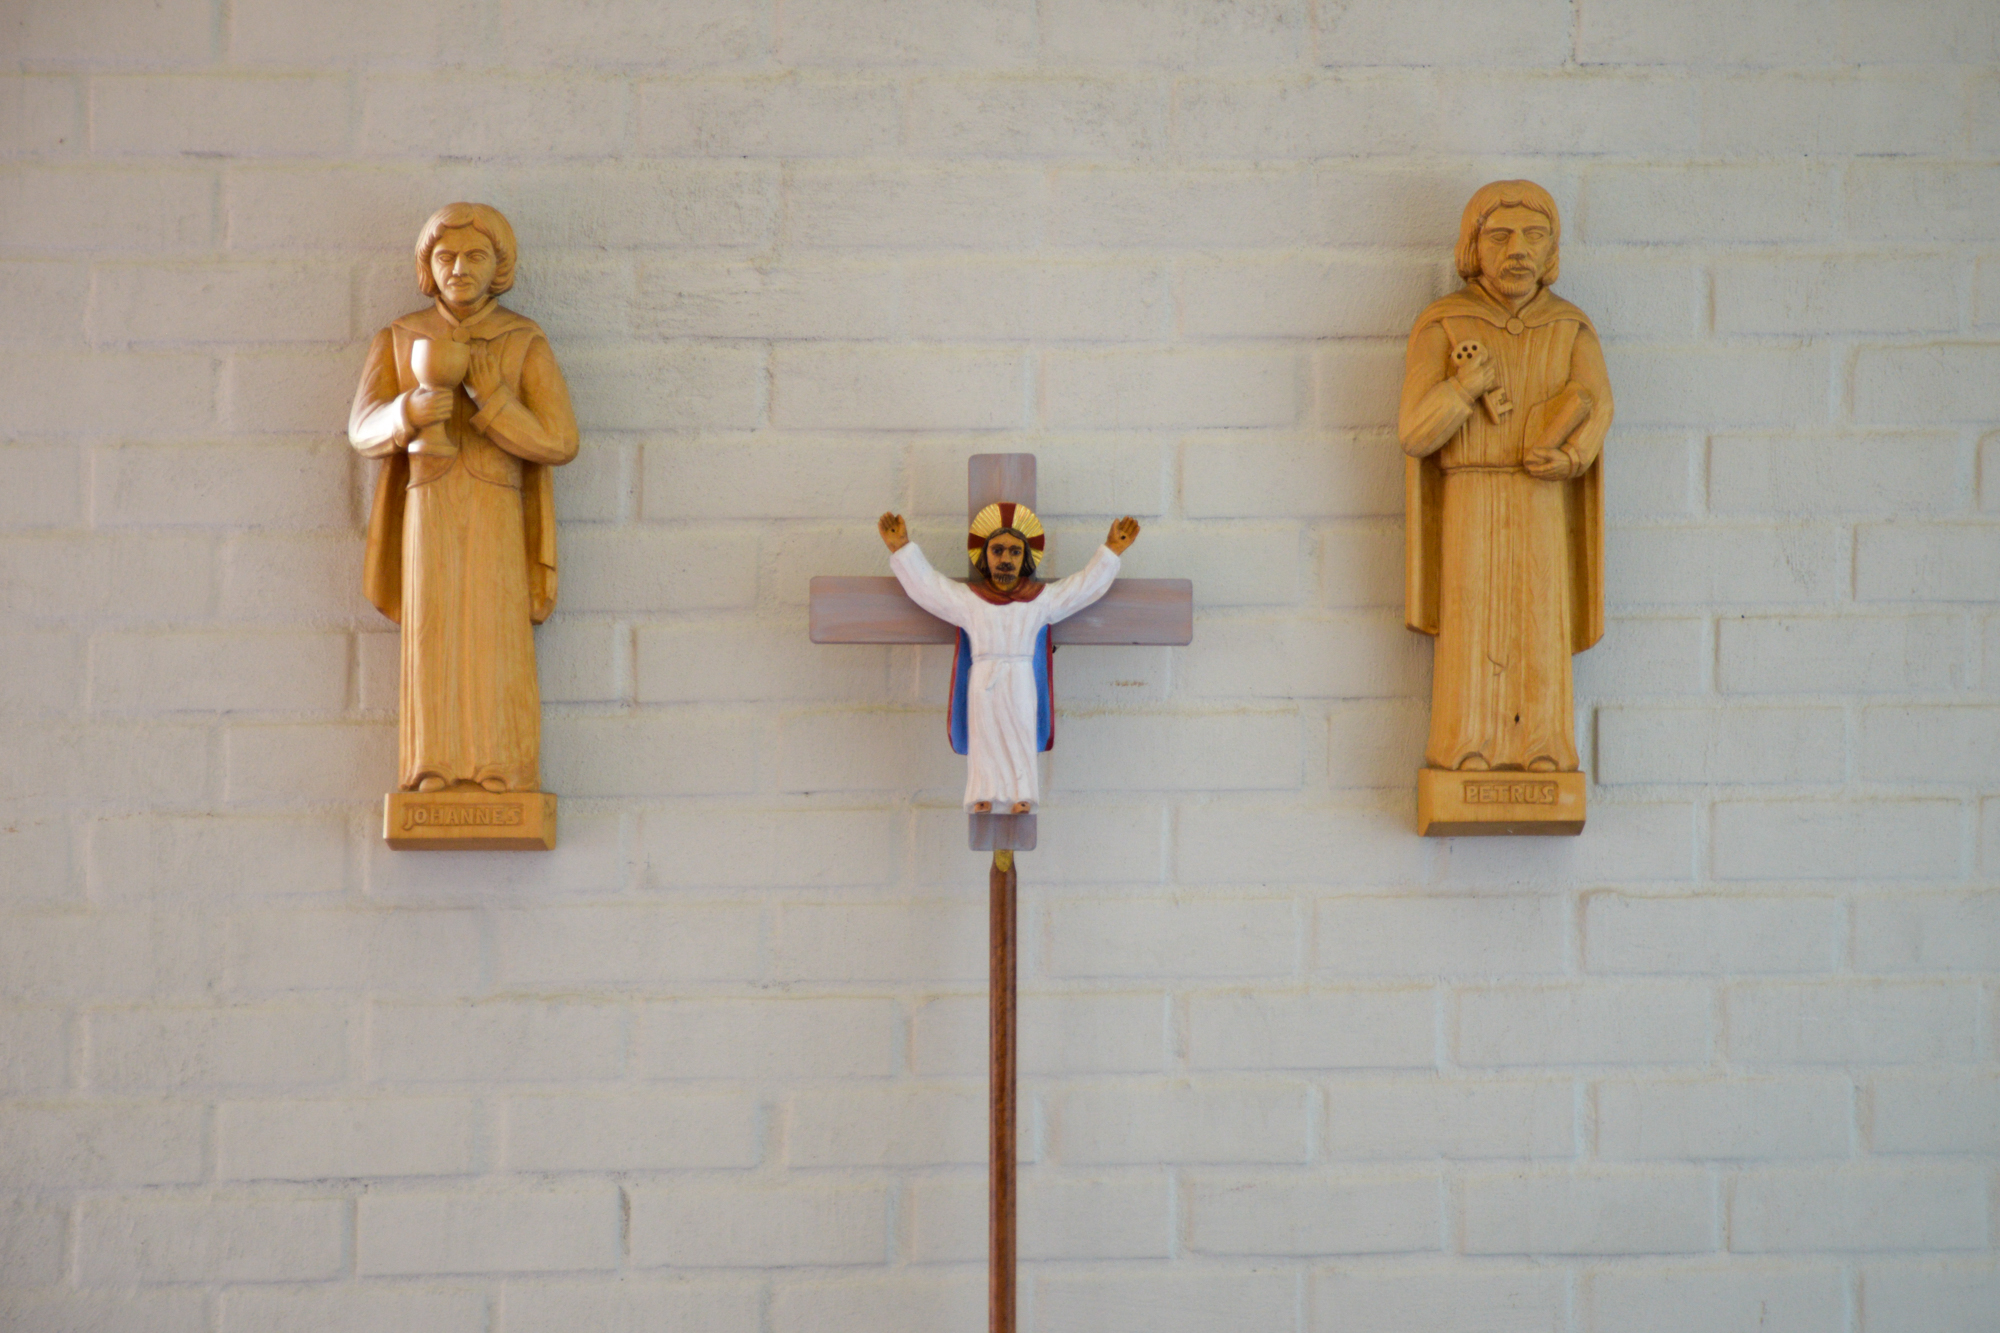 Apostlarna Johannes, med bägare, Petrus, med nyckel och processionskorset är snidade av Emil Sandberg